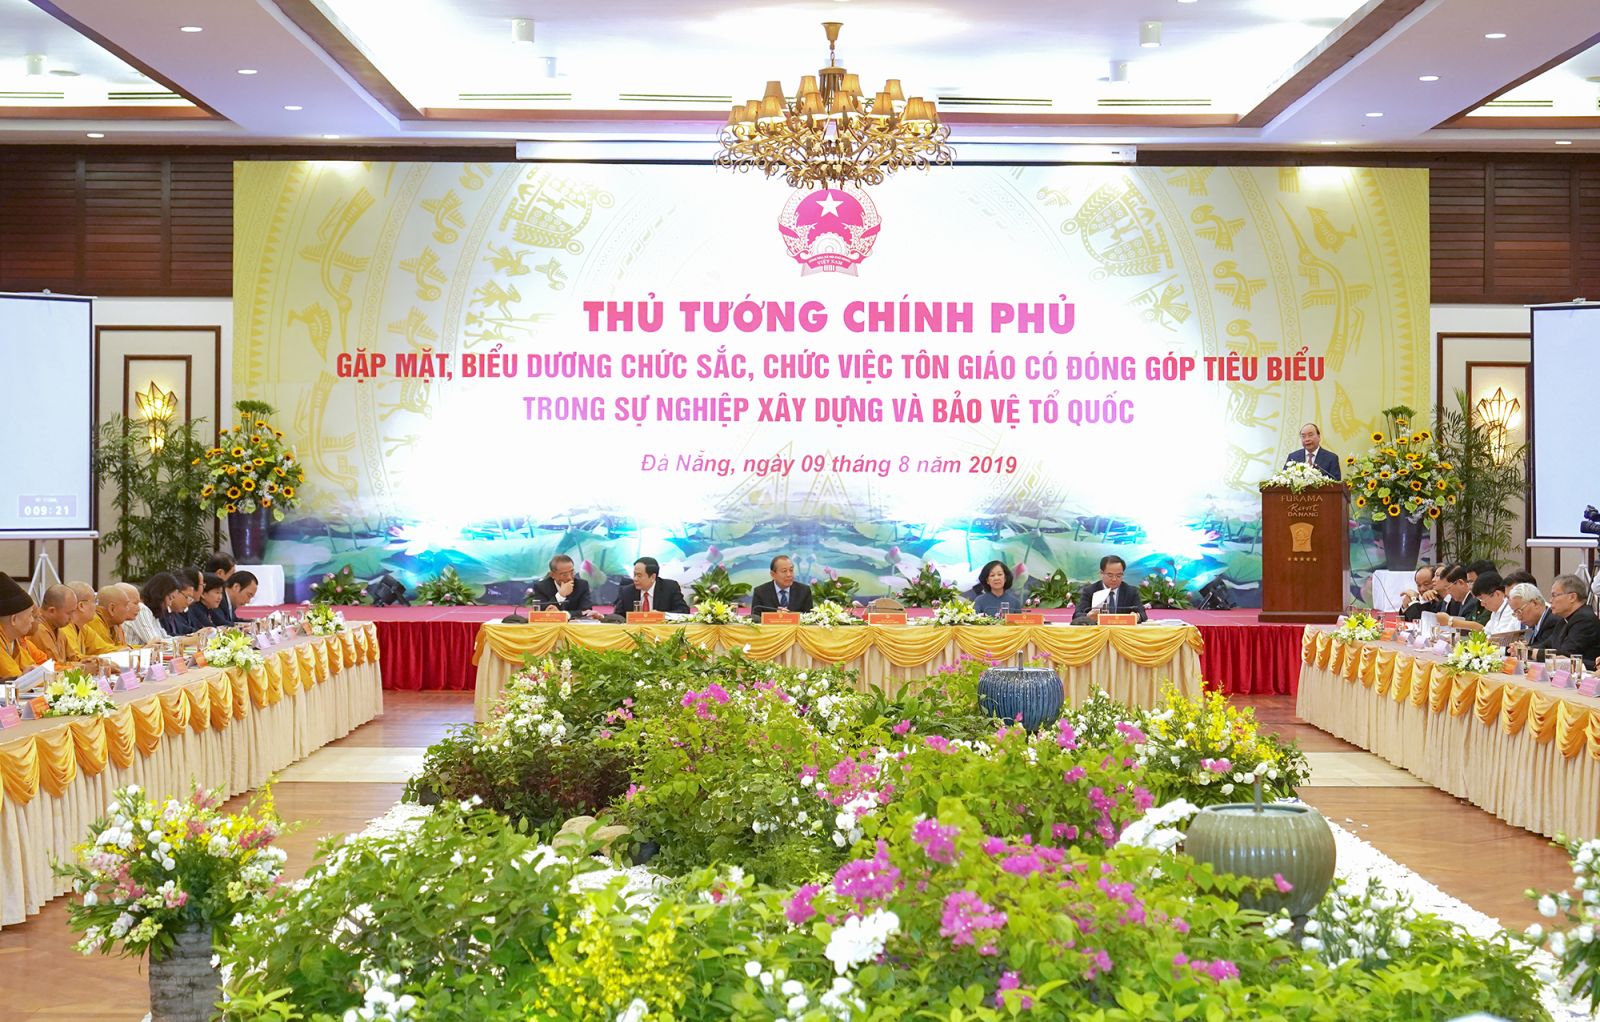 Đại đức Thích Quảng Hiền vinh dự được thủ tướng chính phủ  mời tham dự buổi gặp mặt, biểu dương các chức sắc, chức việc tôn giáo tiêu biểu.